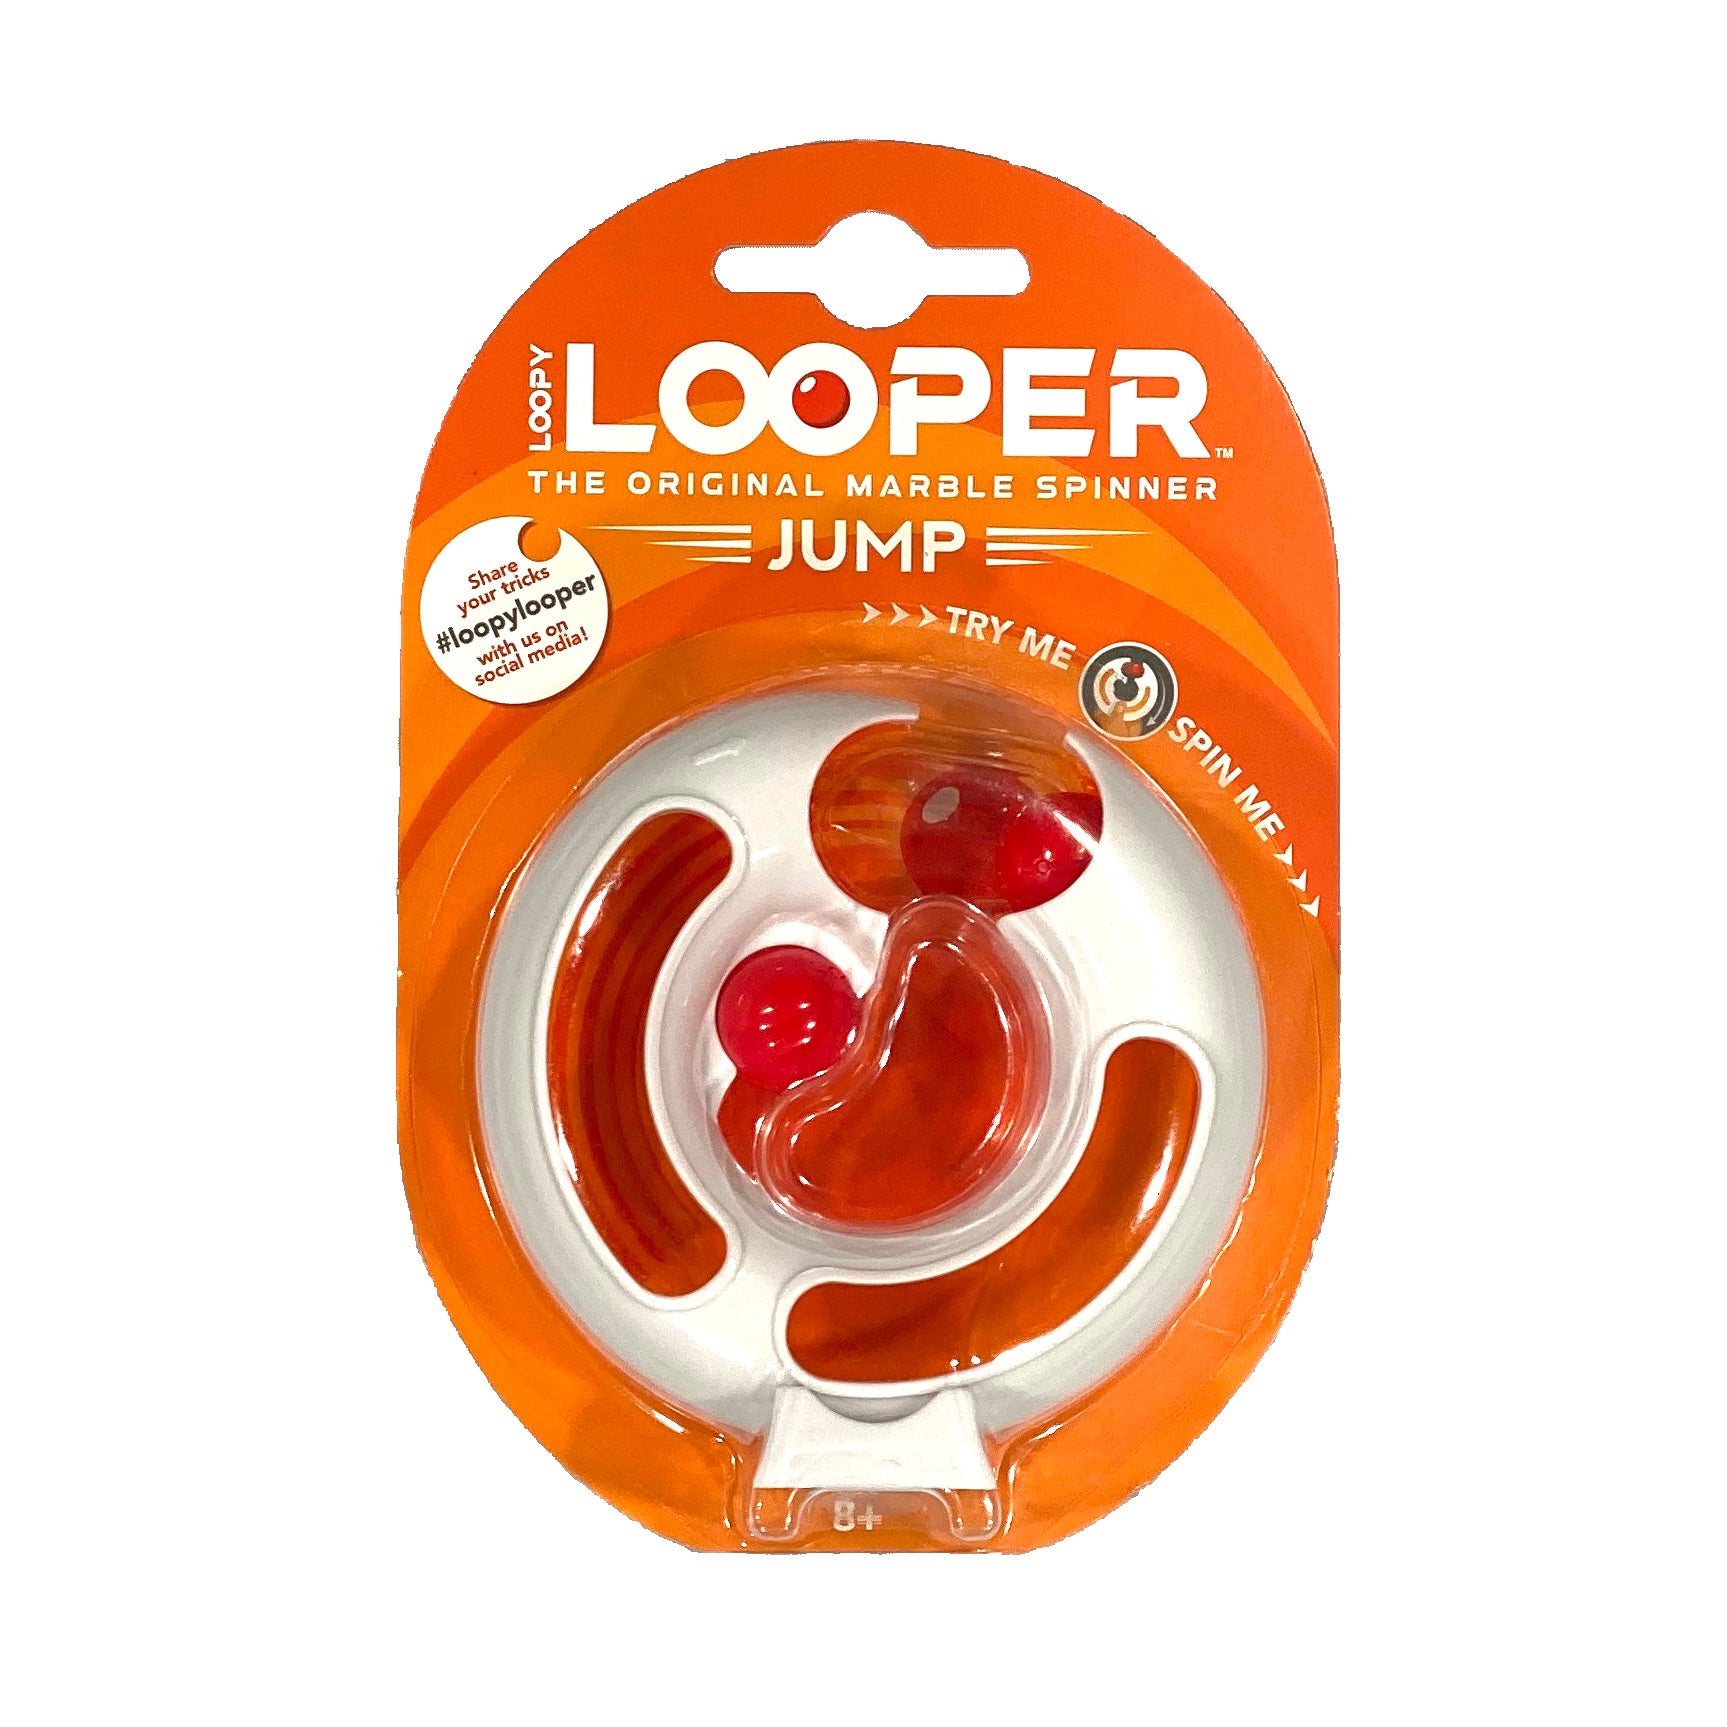 Loopy Looper Marble Spinner - Jump    